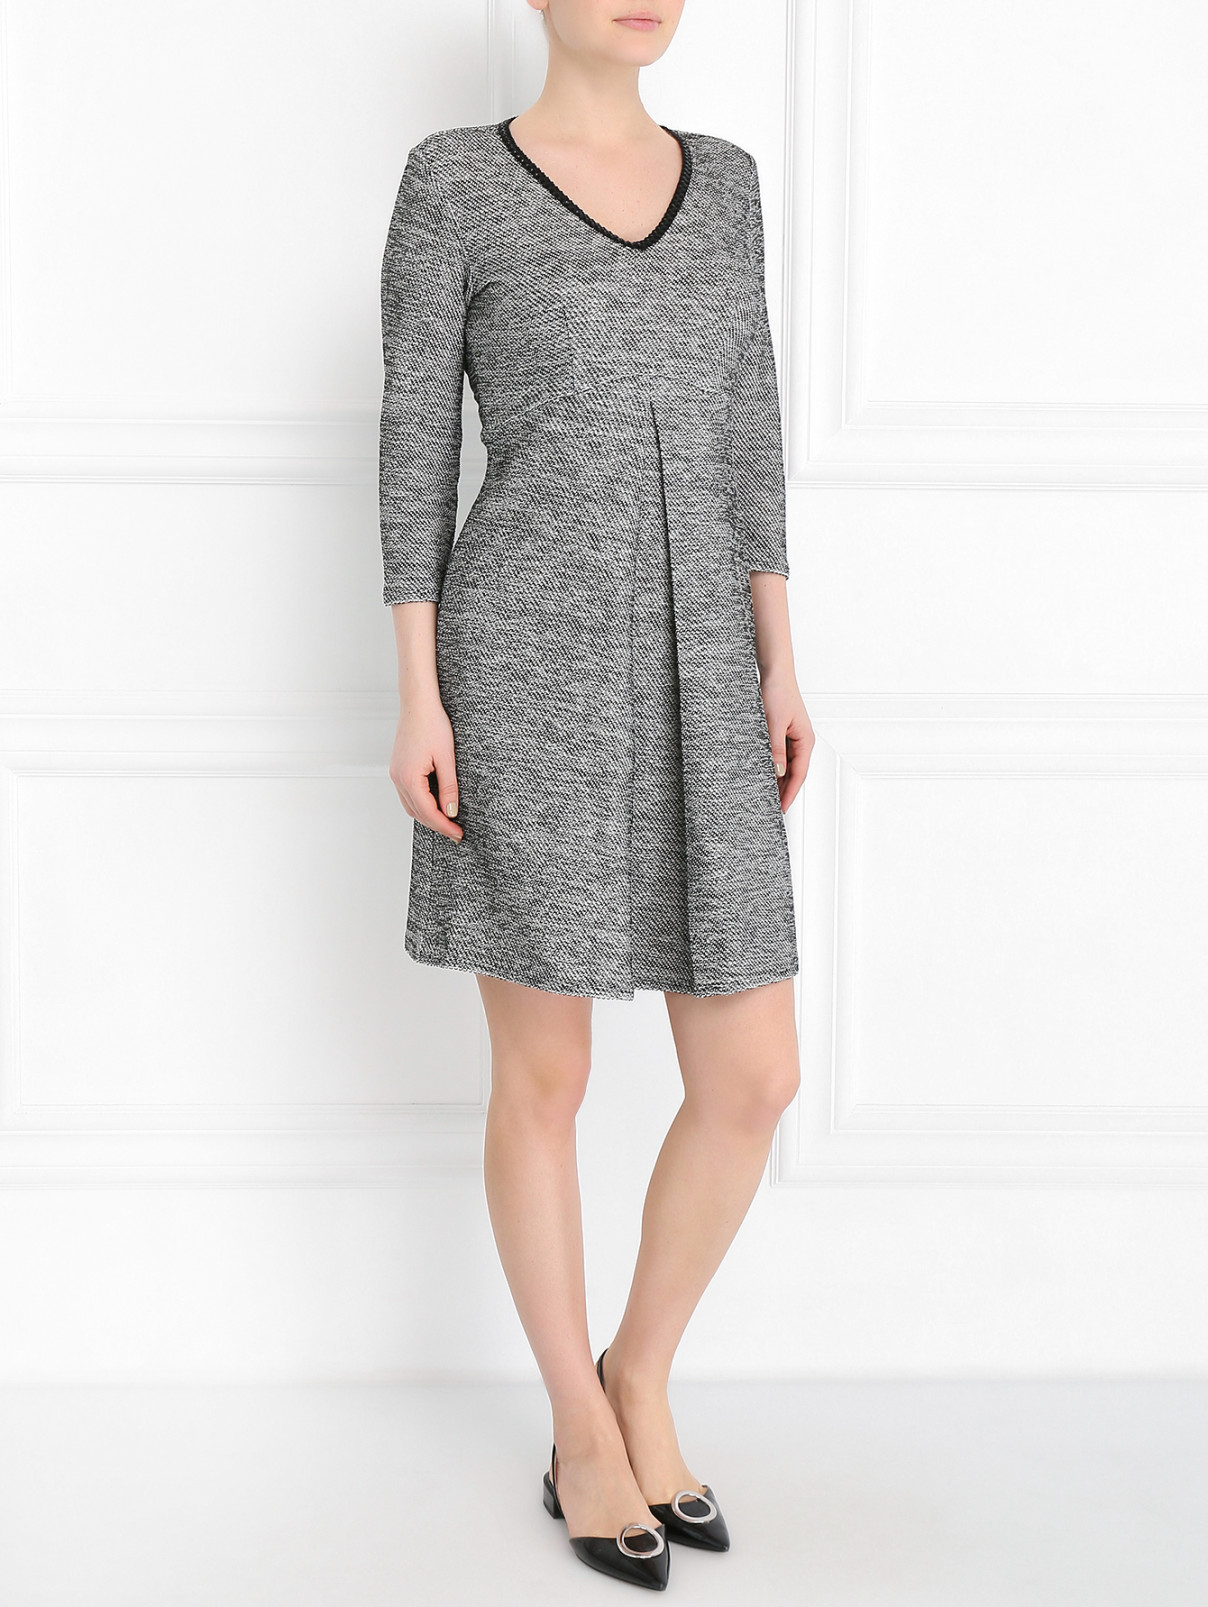 Платье трикотажное с декоративной отделкой Max&Co  –  Модель Общий вид  – Цвет:  Серый